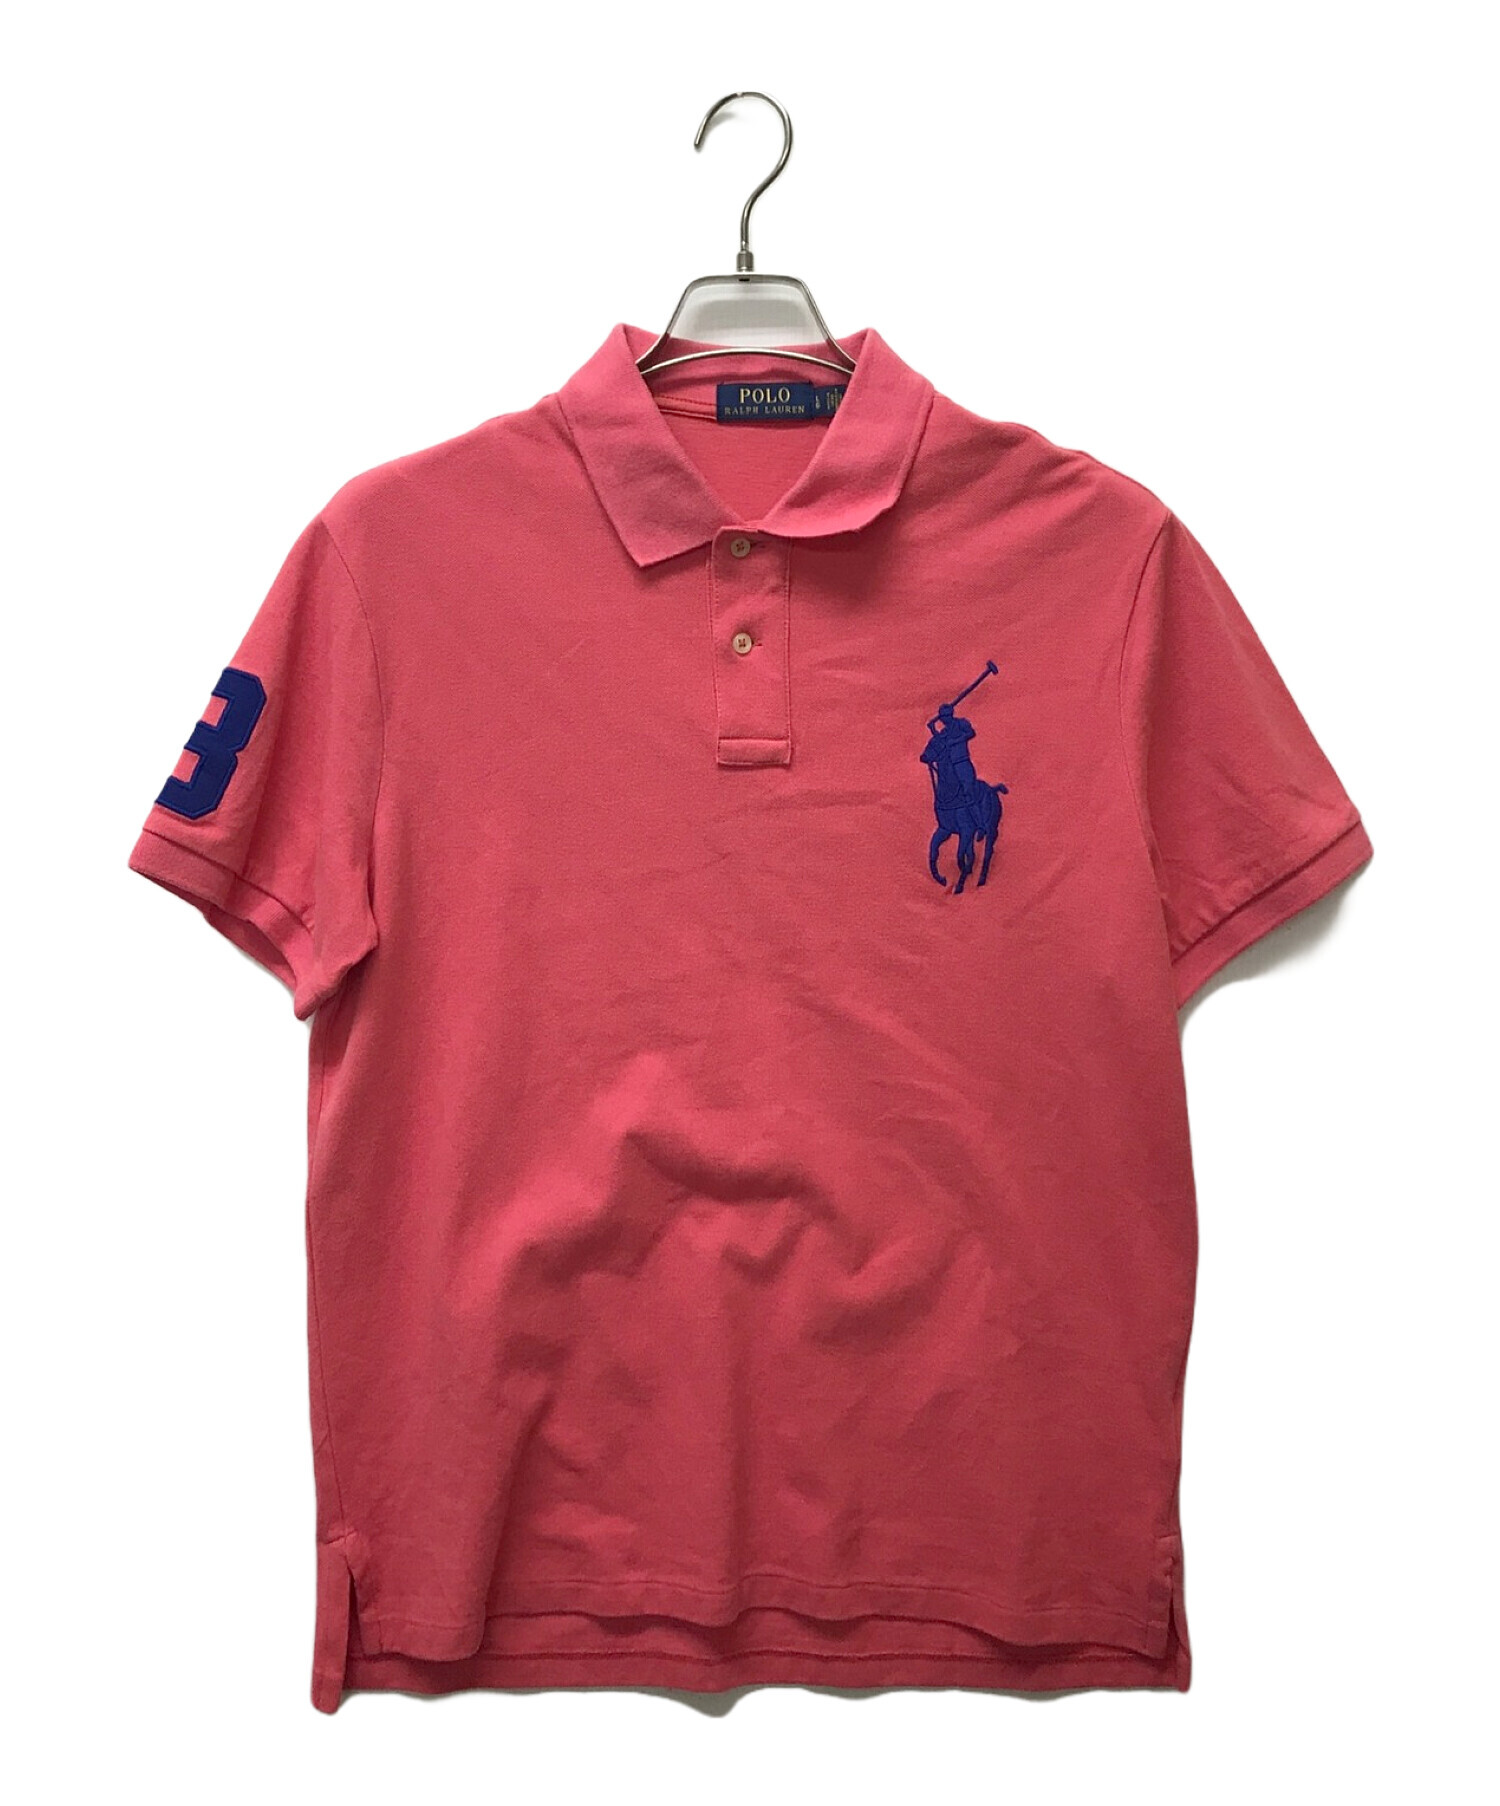 POLO RALPH LAUREN (ポロ・ラルフローレン) ビッグポニーポロシャツ ピンク サイズ:L